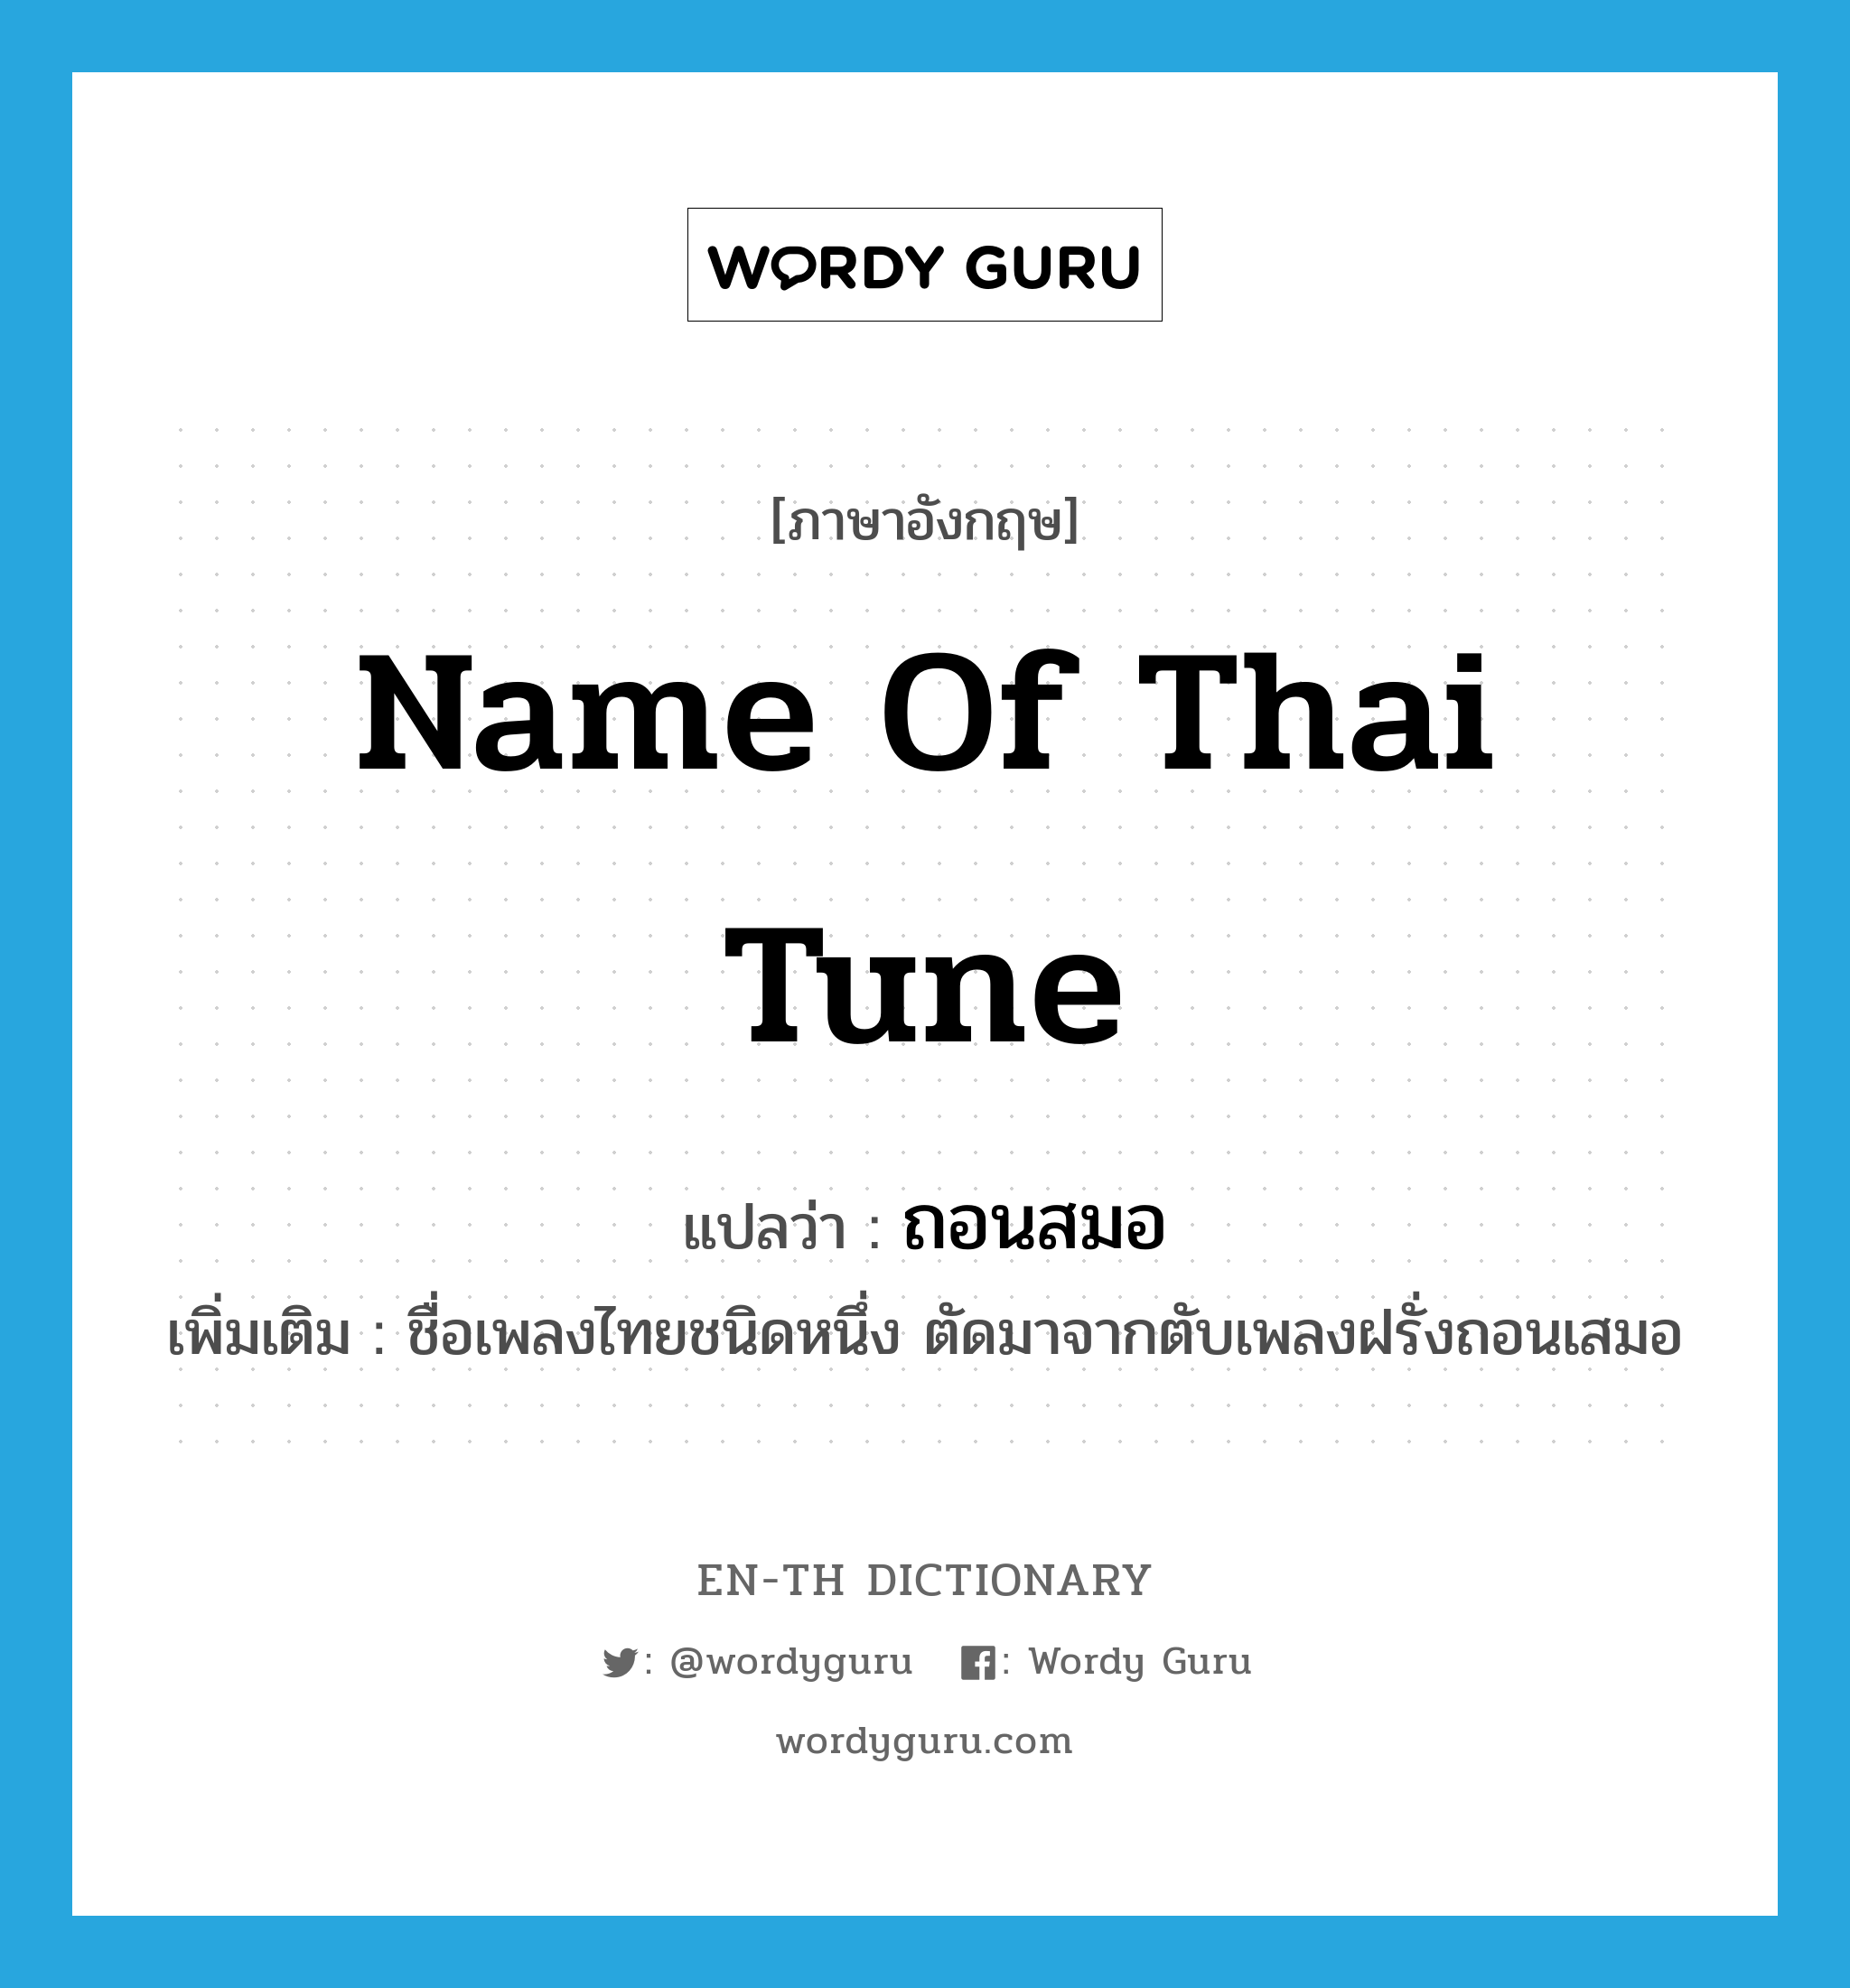 ถอนสมอ ภาษาอังกฤษ?, คำศัพท์ภาษาอังกฤษ ถอนสมอ แปลว่า name of Thai tune ประเภท N เพิ่มเติม ชื่อเพลงไทยชนิดหนึ่ง ตัดมาจากตับเพลงฝรั่งถอนเสมอ หมวด N